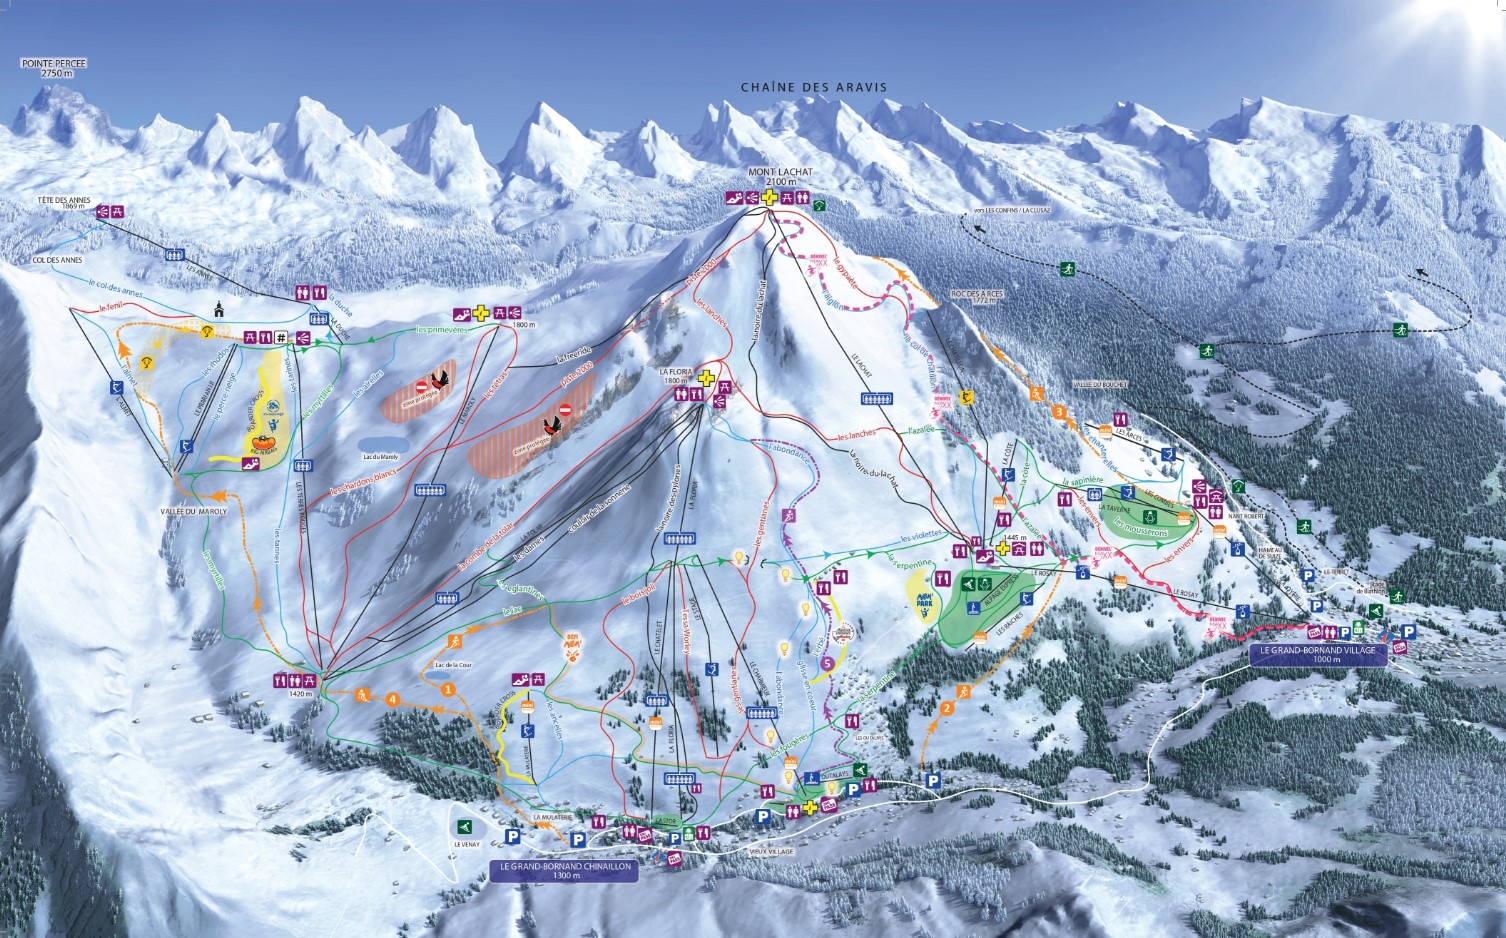 Le Grand Bornand Ski Area in France Trail Map